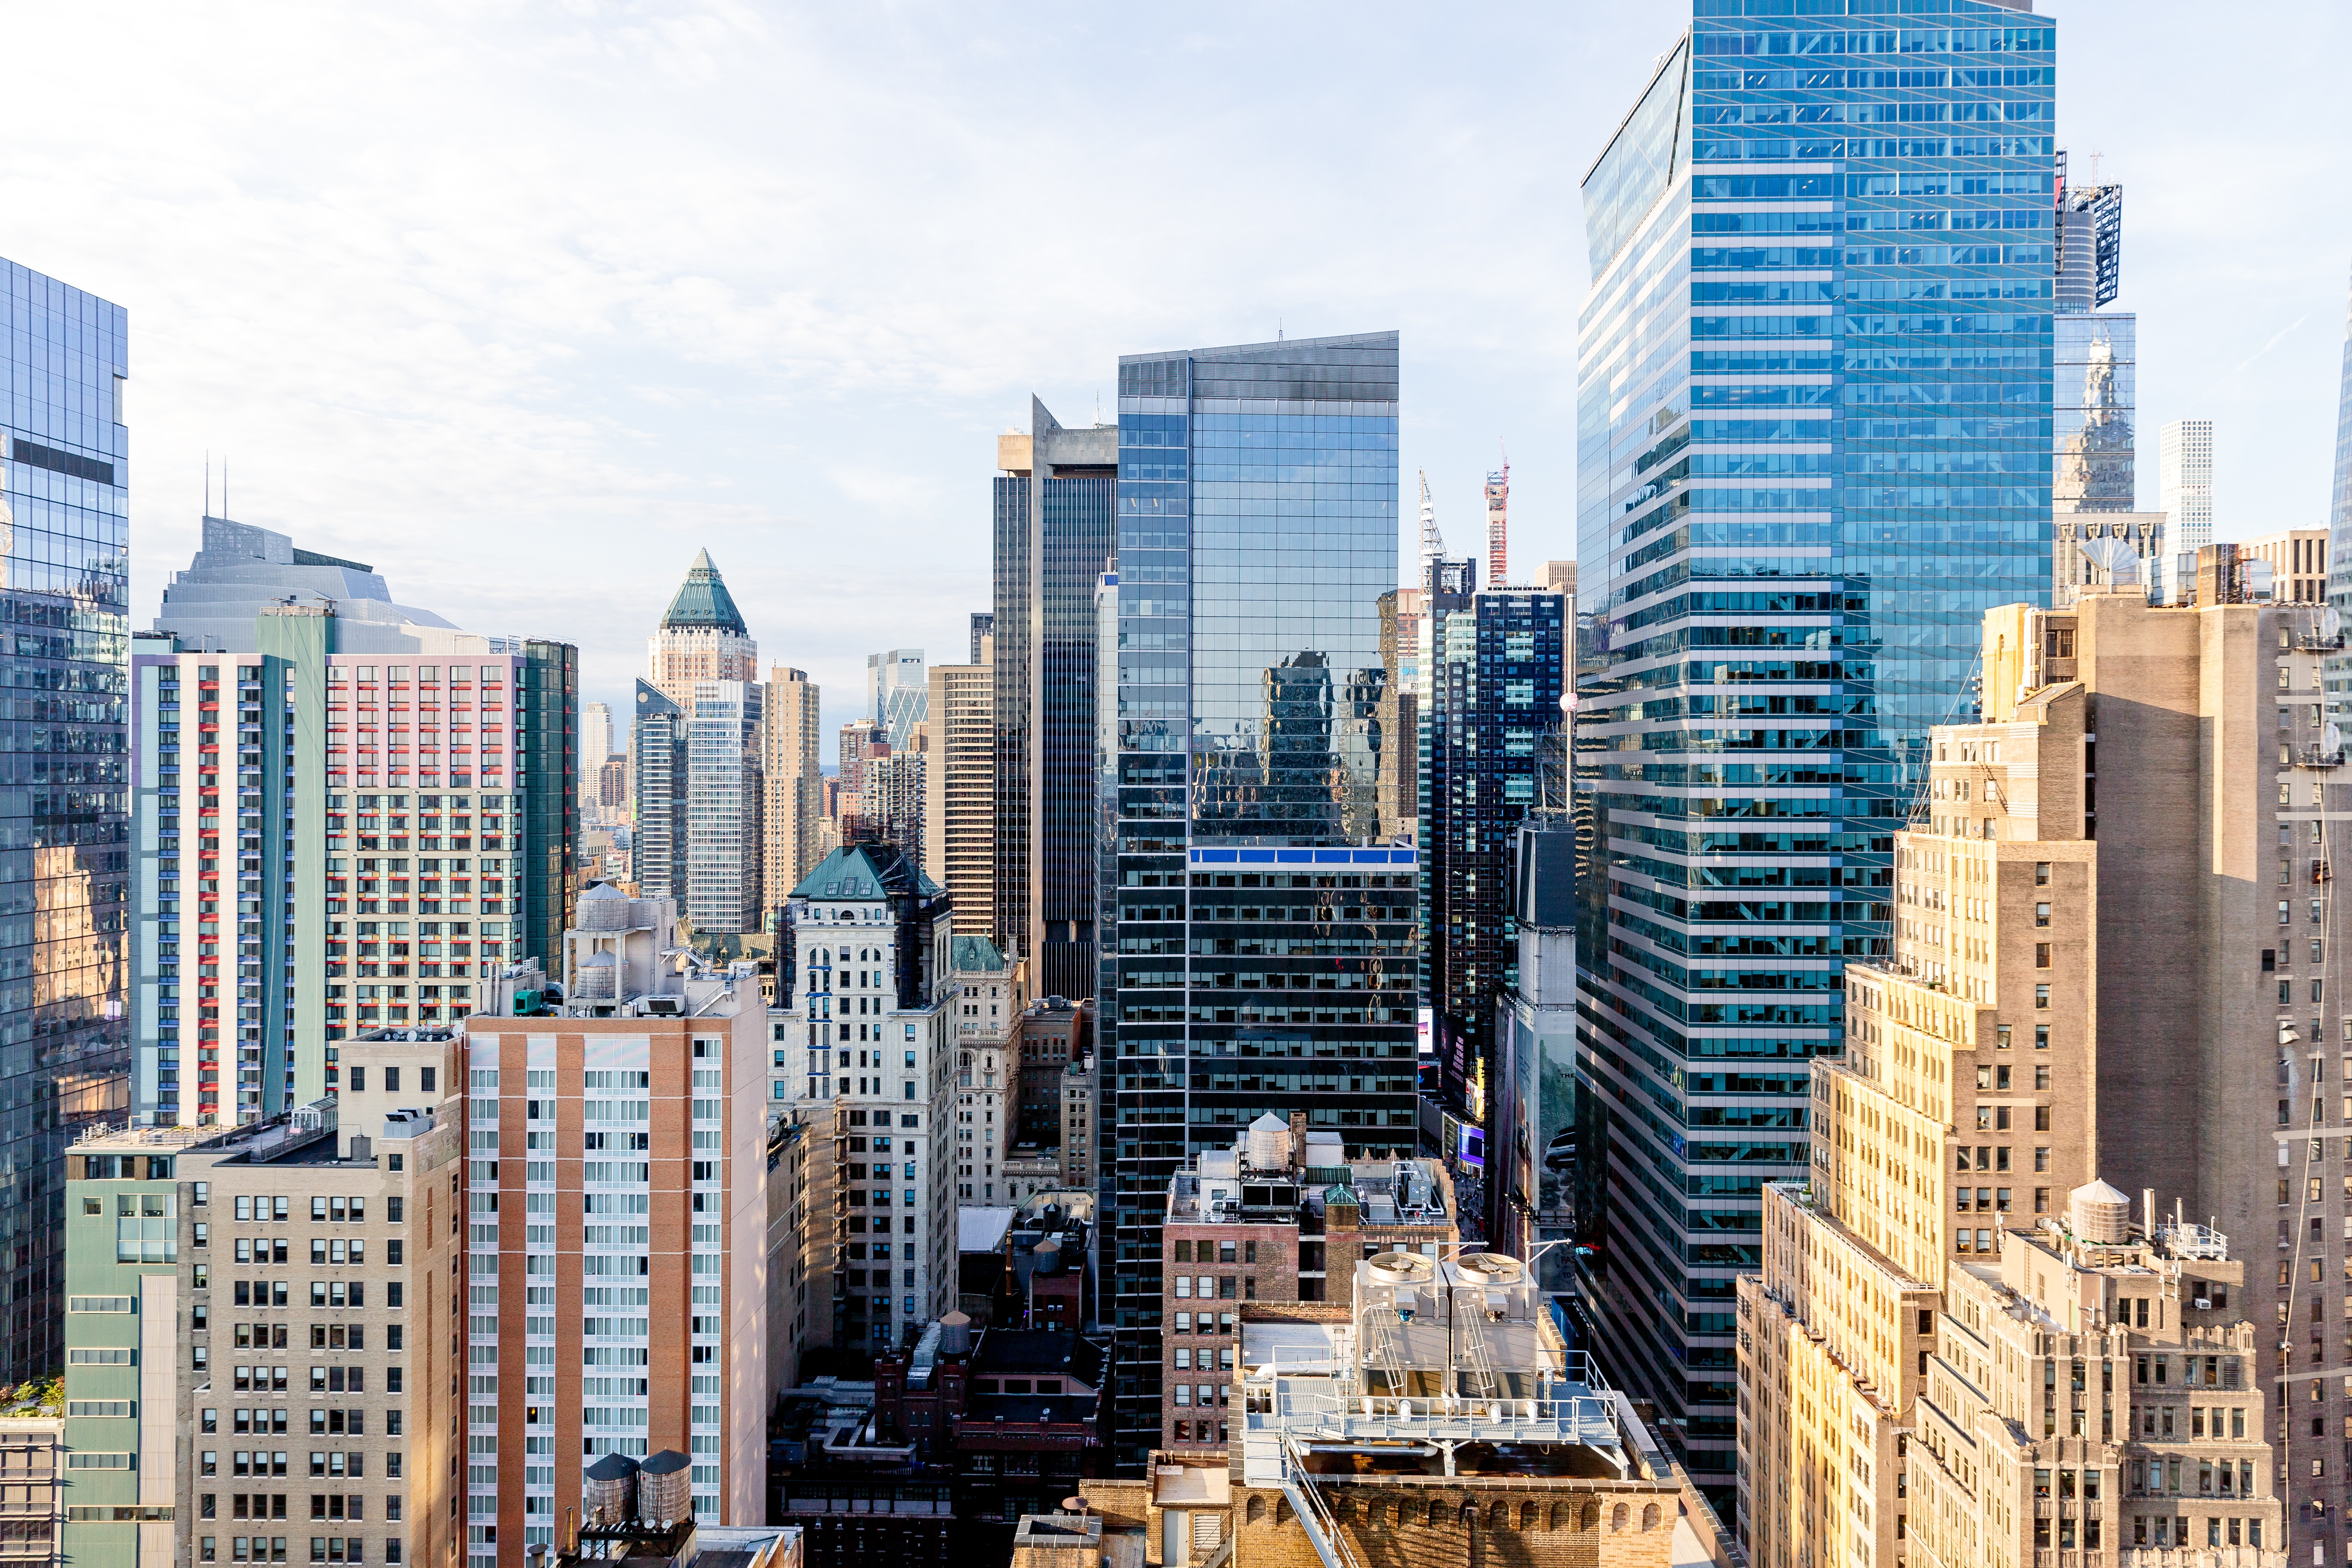 Nova York transformará hotéis subutilizados em moradias populares para combater crise habitacional (Foto: Getty Images)